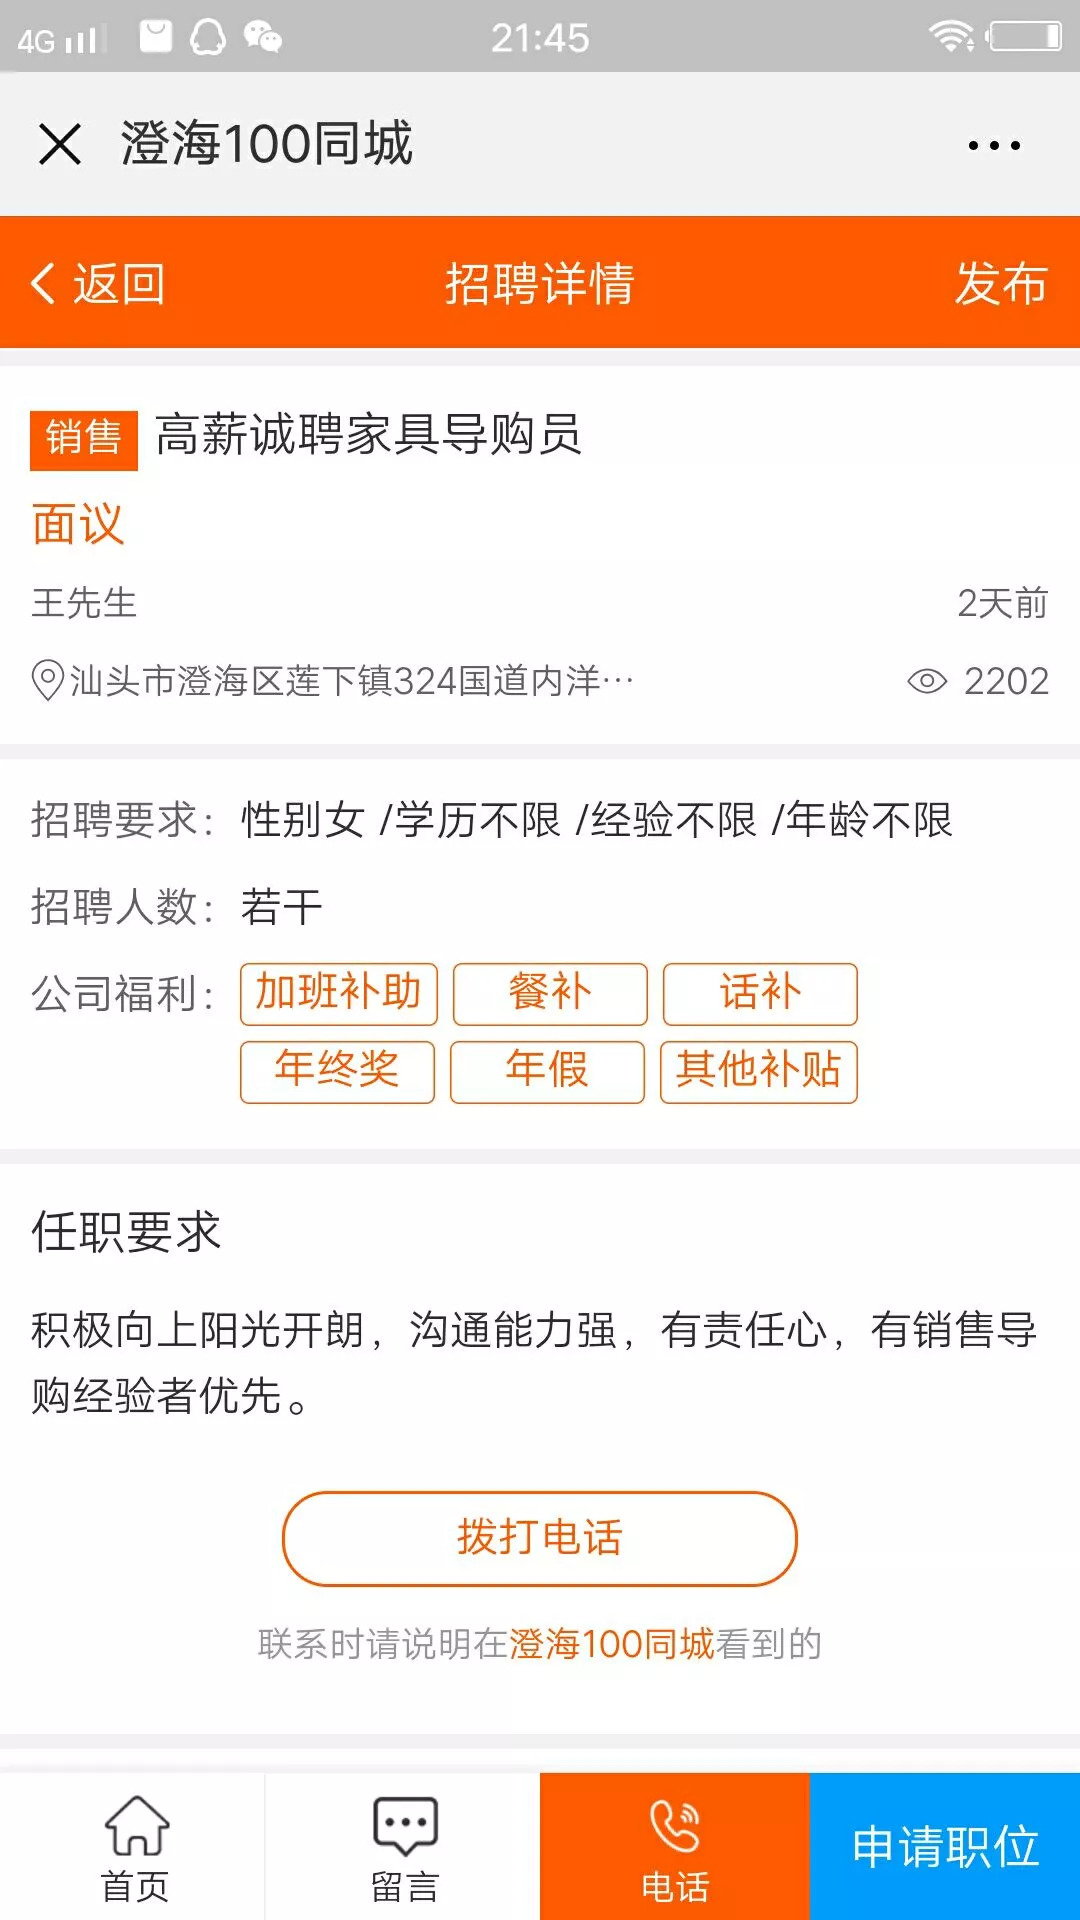 【同城】8月28日澄海招聘信息汇总,有土豪老板